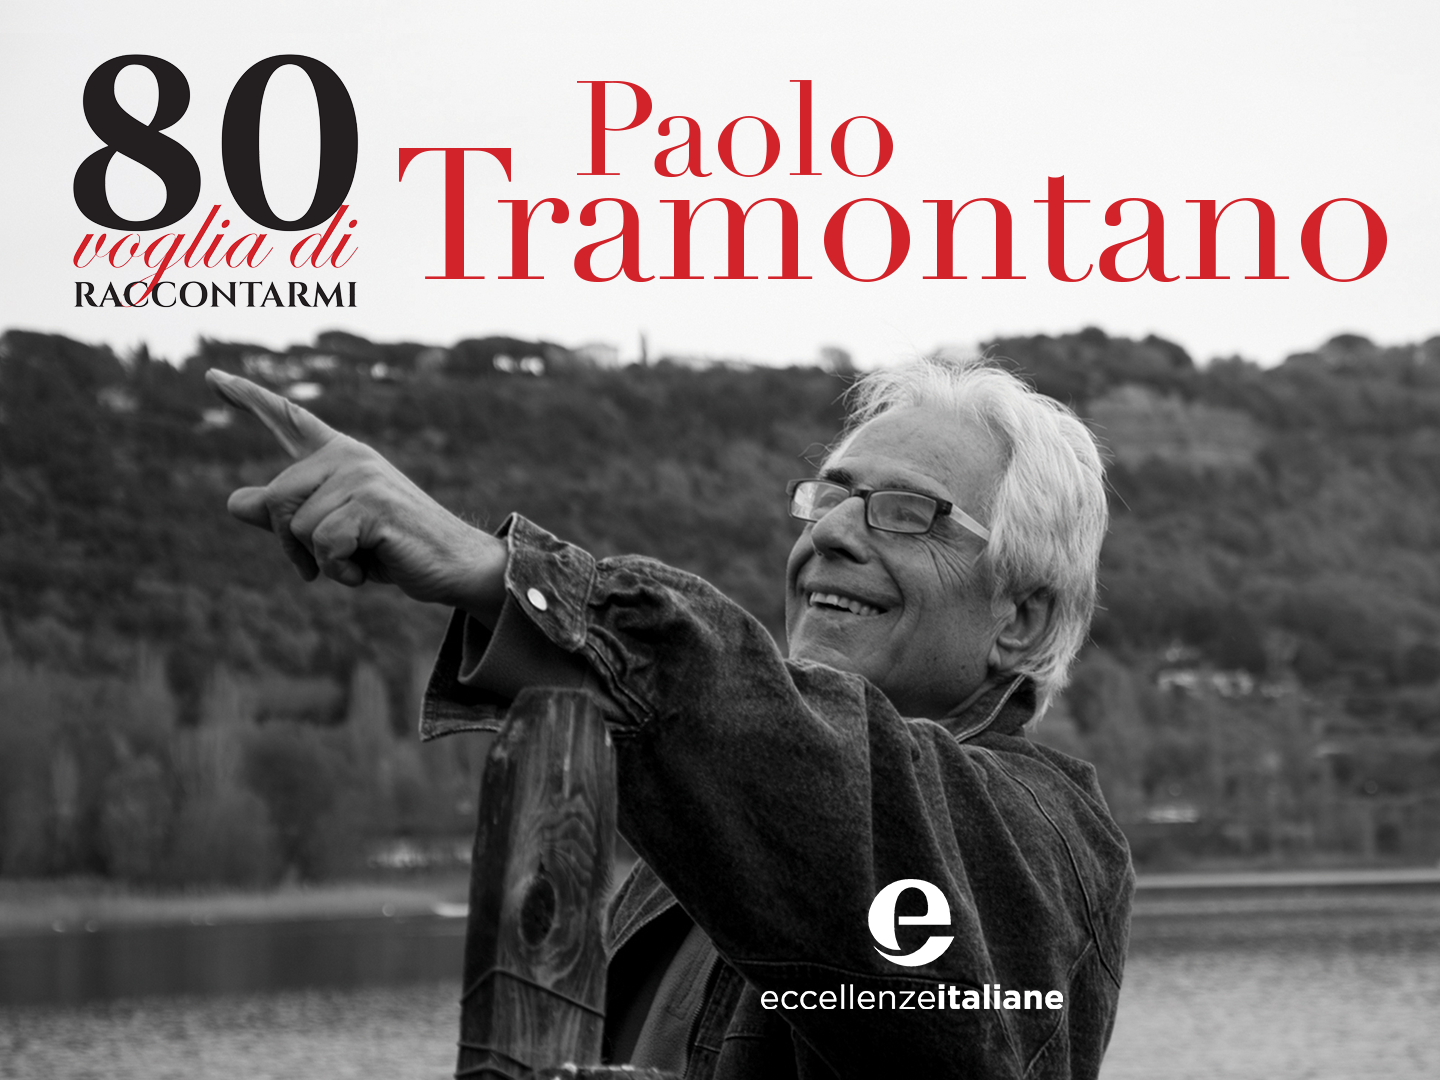 Una monografia e un compleanno speciale per Paolo Tramontano, fondatore di Harmony Group